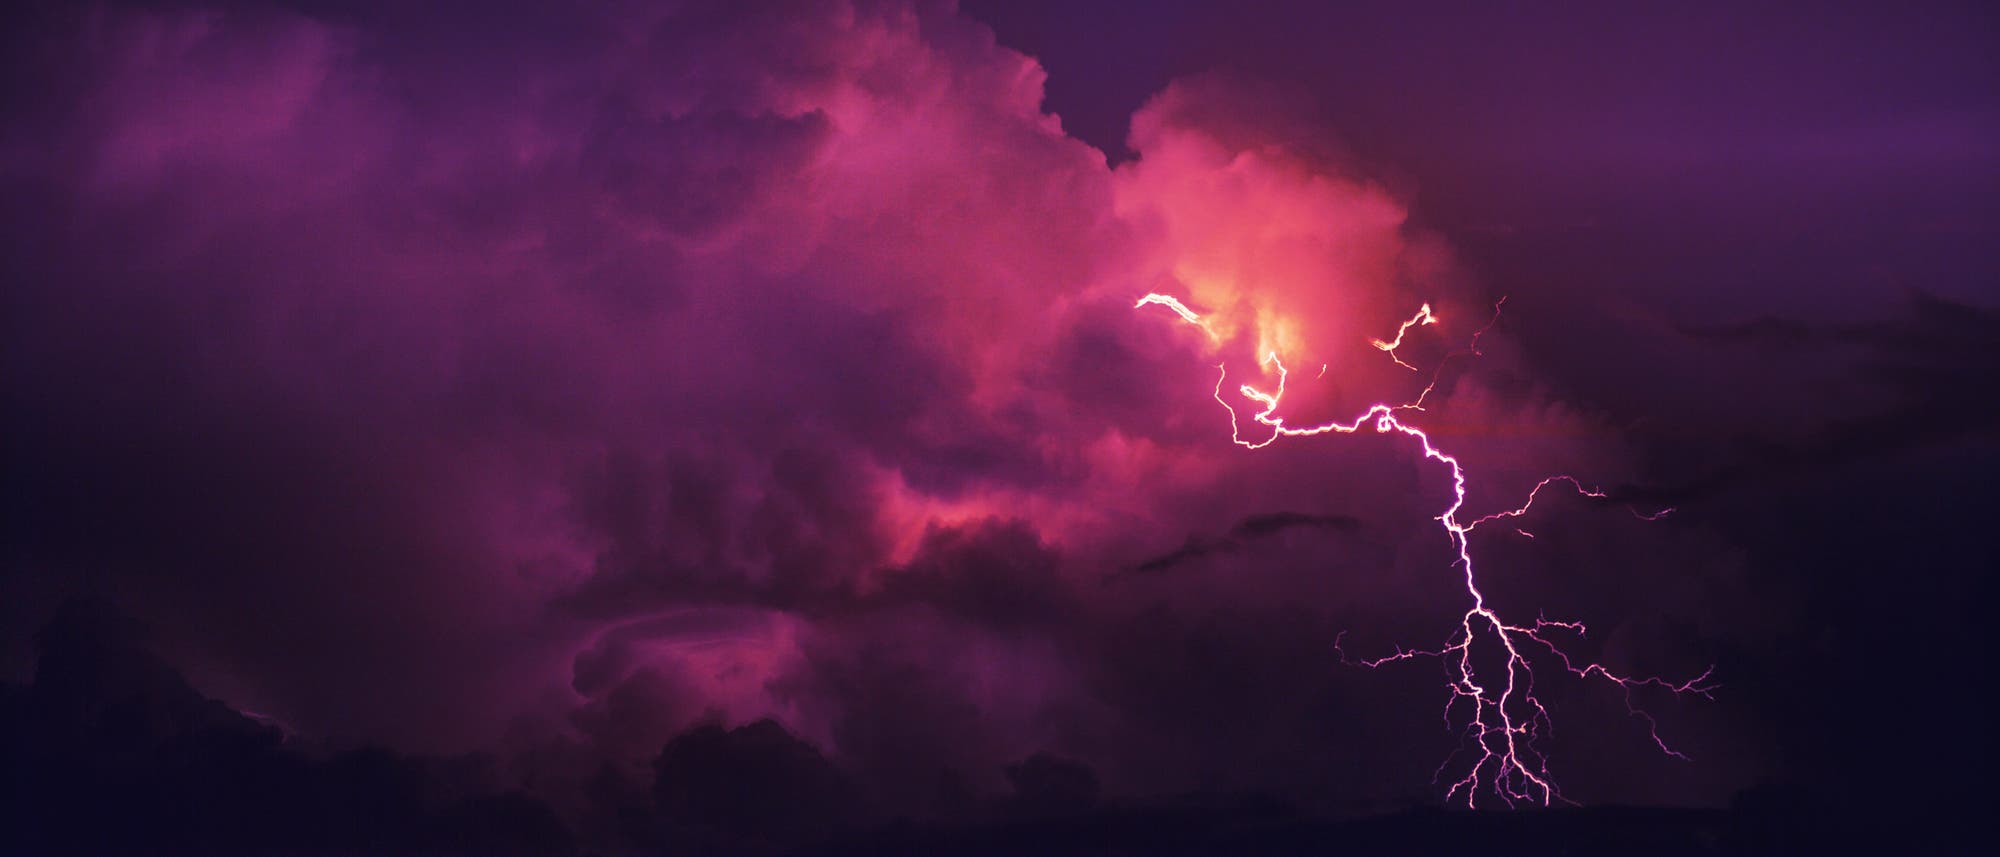 Blitze entstehen, wenn Eiskristalle in konvektiven Gewitterwolken - Wolken, gefüllt mit aufgewühlten Strömen, die von warmer Luft gespeist werden - zusammenstoßen und elektrische Ladung übertragen.